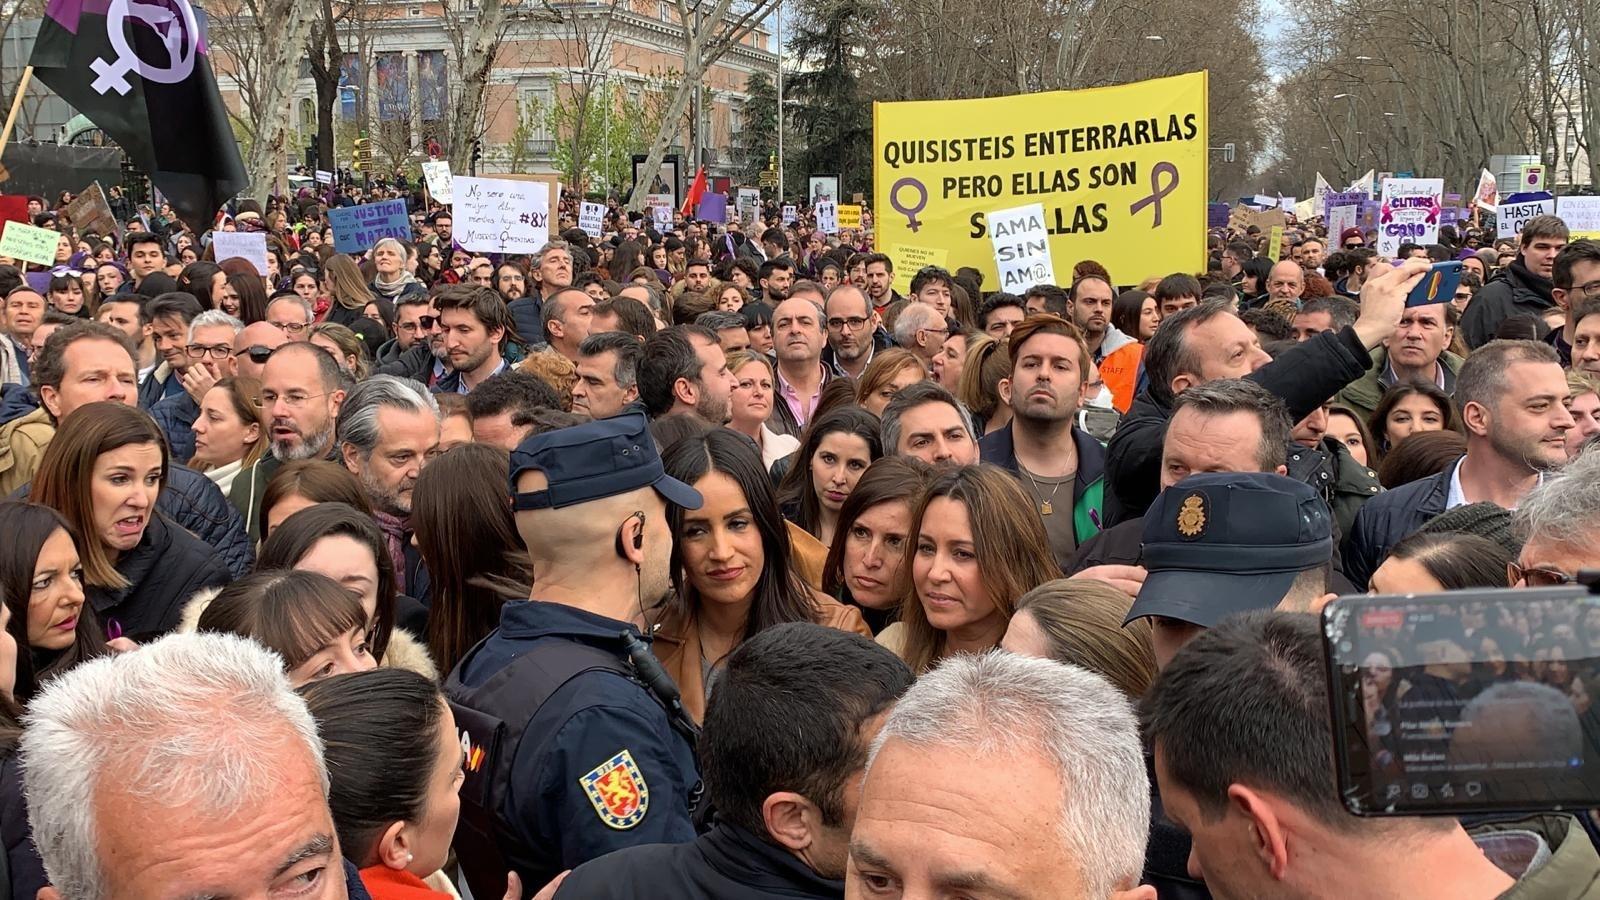  La vicealcaldesa de Madrid, Begoña Villacís, escoltada por varios policías durante la manifestación del 8 de marzo. Fuente: EP.